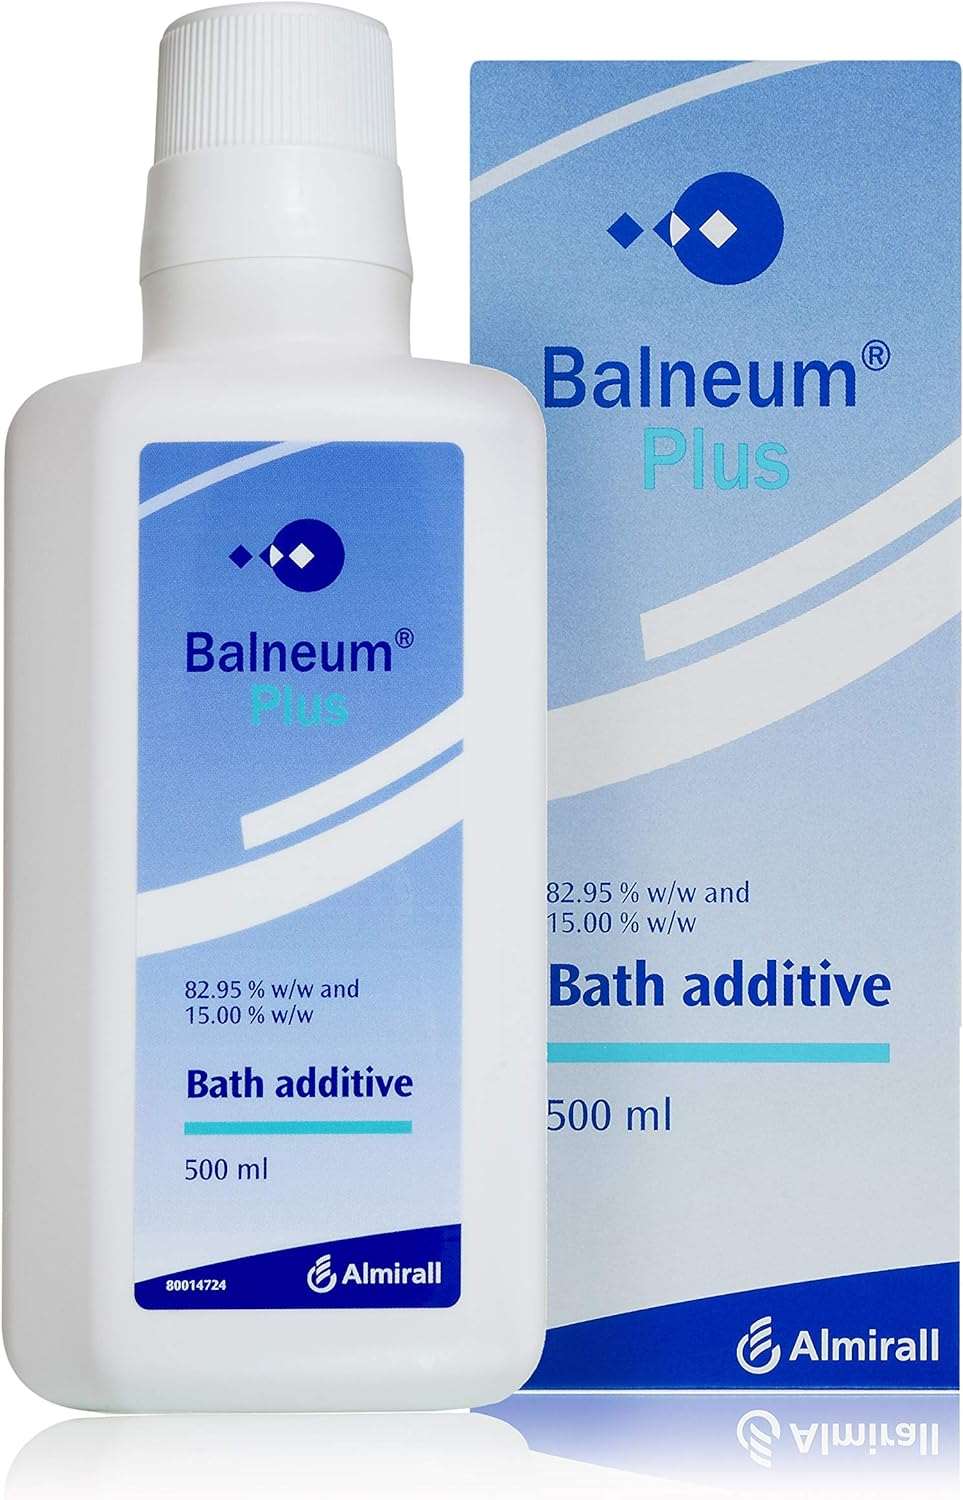 Balneum Plus Bath Additive, 500ml